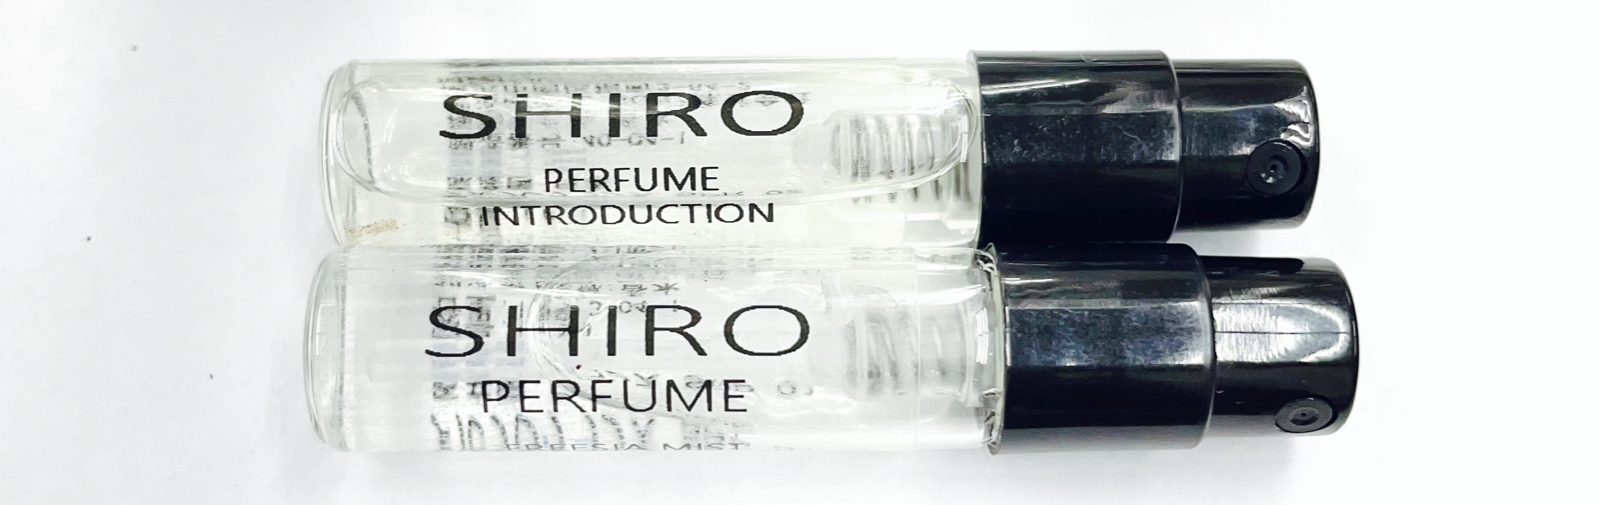 shiro シロ イントロダクション 香水 1.5ml パルファム